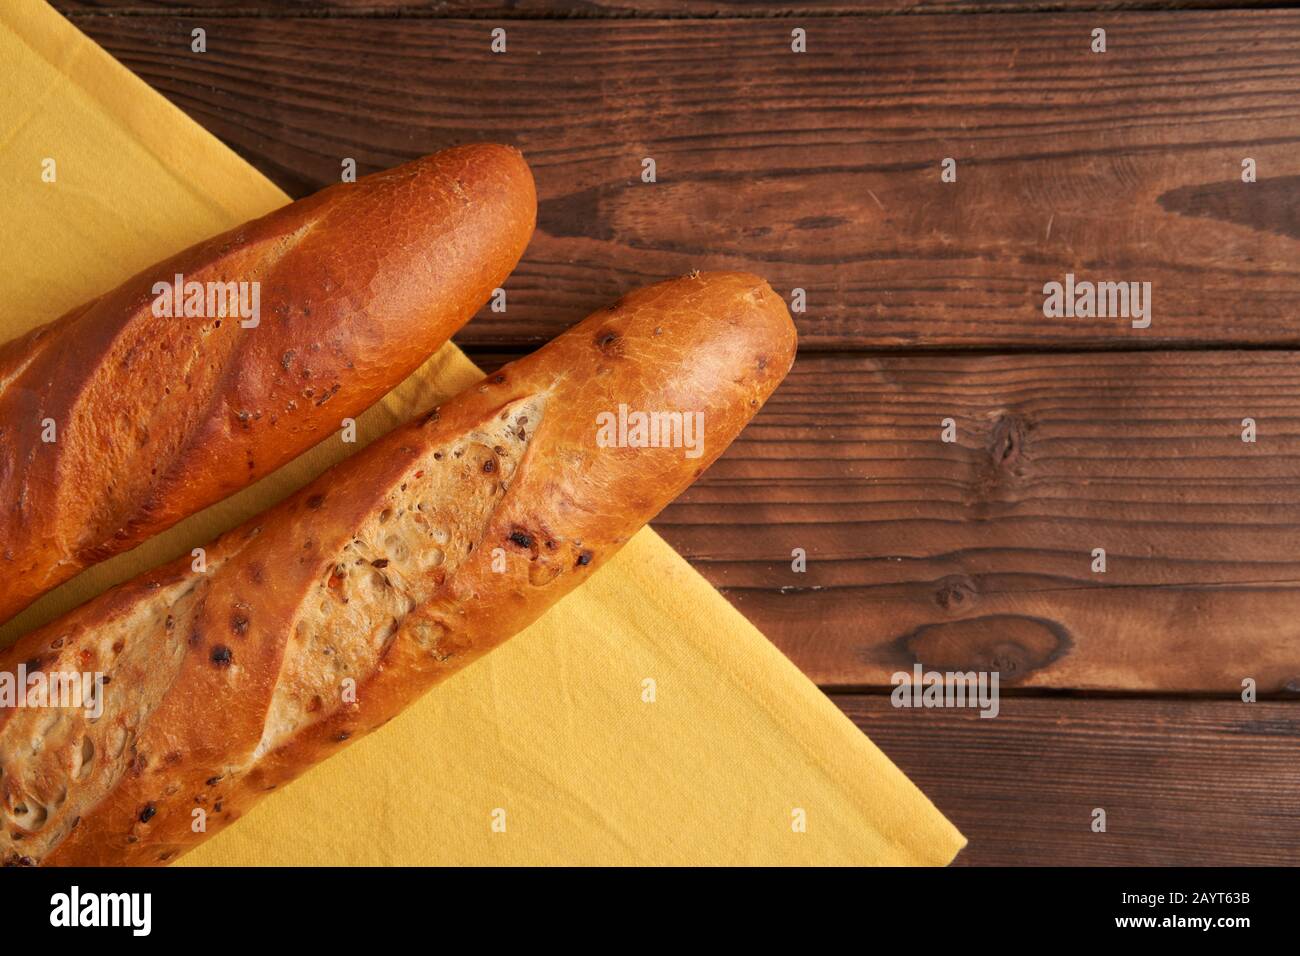 Deux baguettes françaises croustillantes sont des baguettes en tissu jaune en serviette en bois fond de table en baguettes en assortiment avec des graines de sésame pâtisseries nationales françaises classiques Banque D'Images